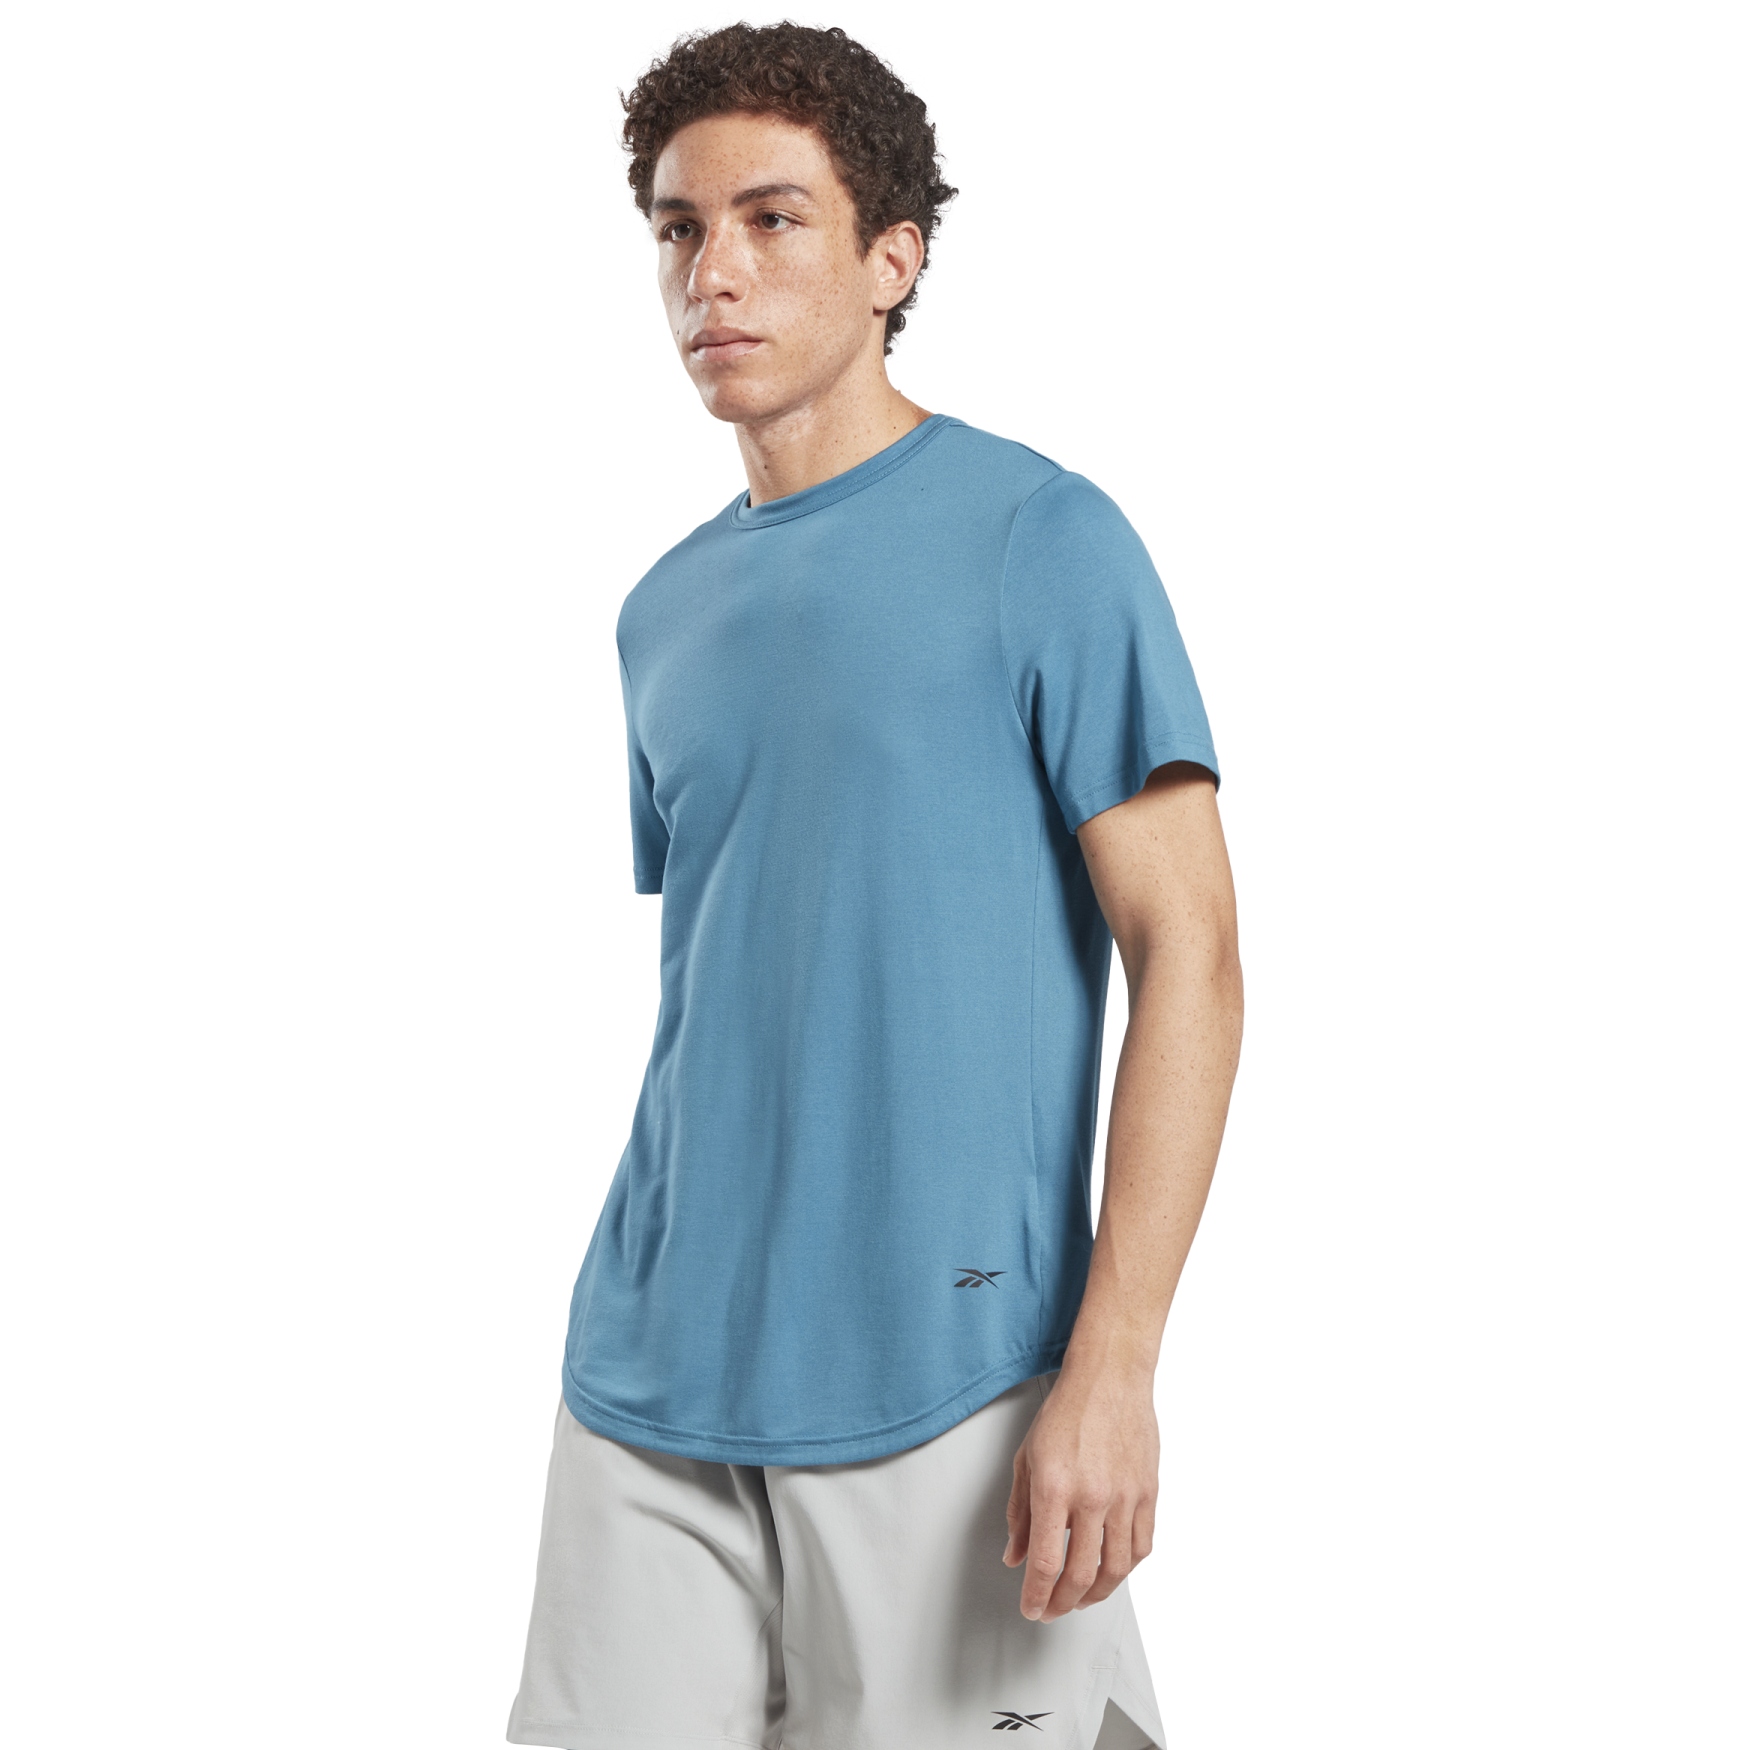 Produktbild von Reebok TS ACTIVCHILL Dreamblend T-Shirt Herren - steely blue